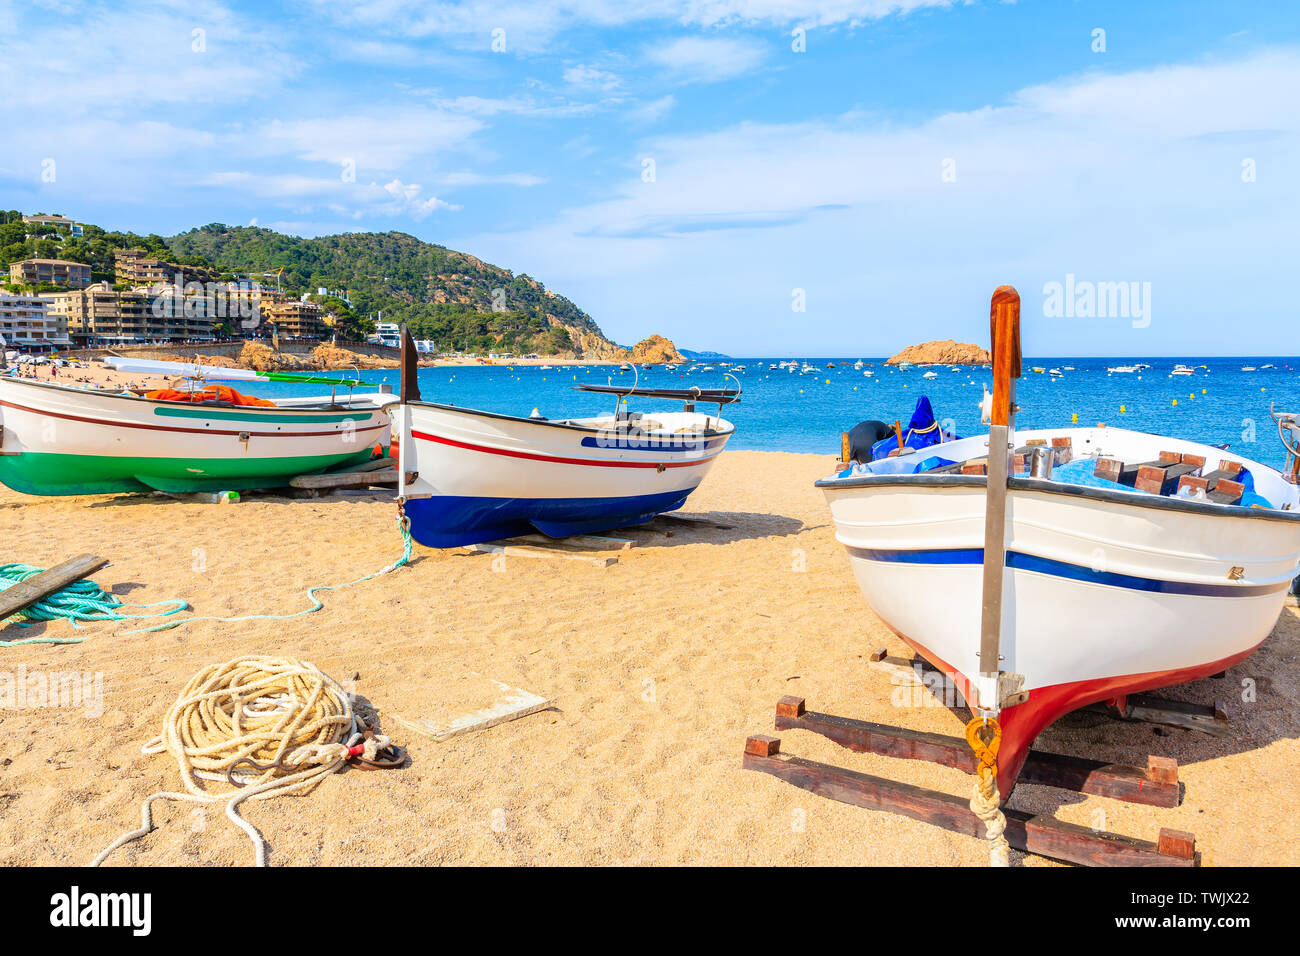 Barche di pescatori sulla spiaggia di sabbia dorata in Tossa de Mar città, Costa Brava, Spagna Foto Stock